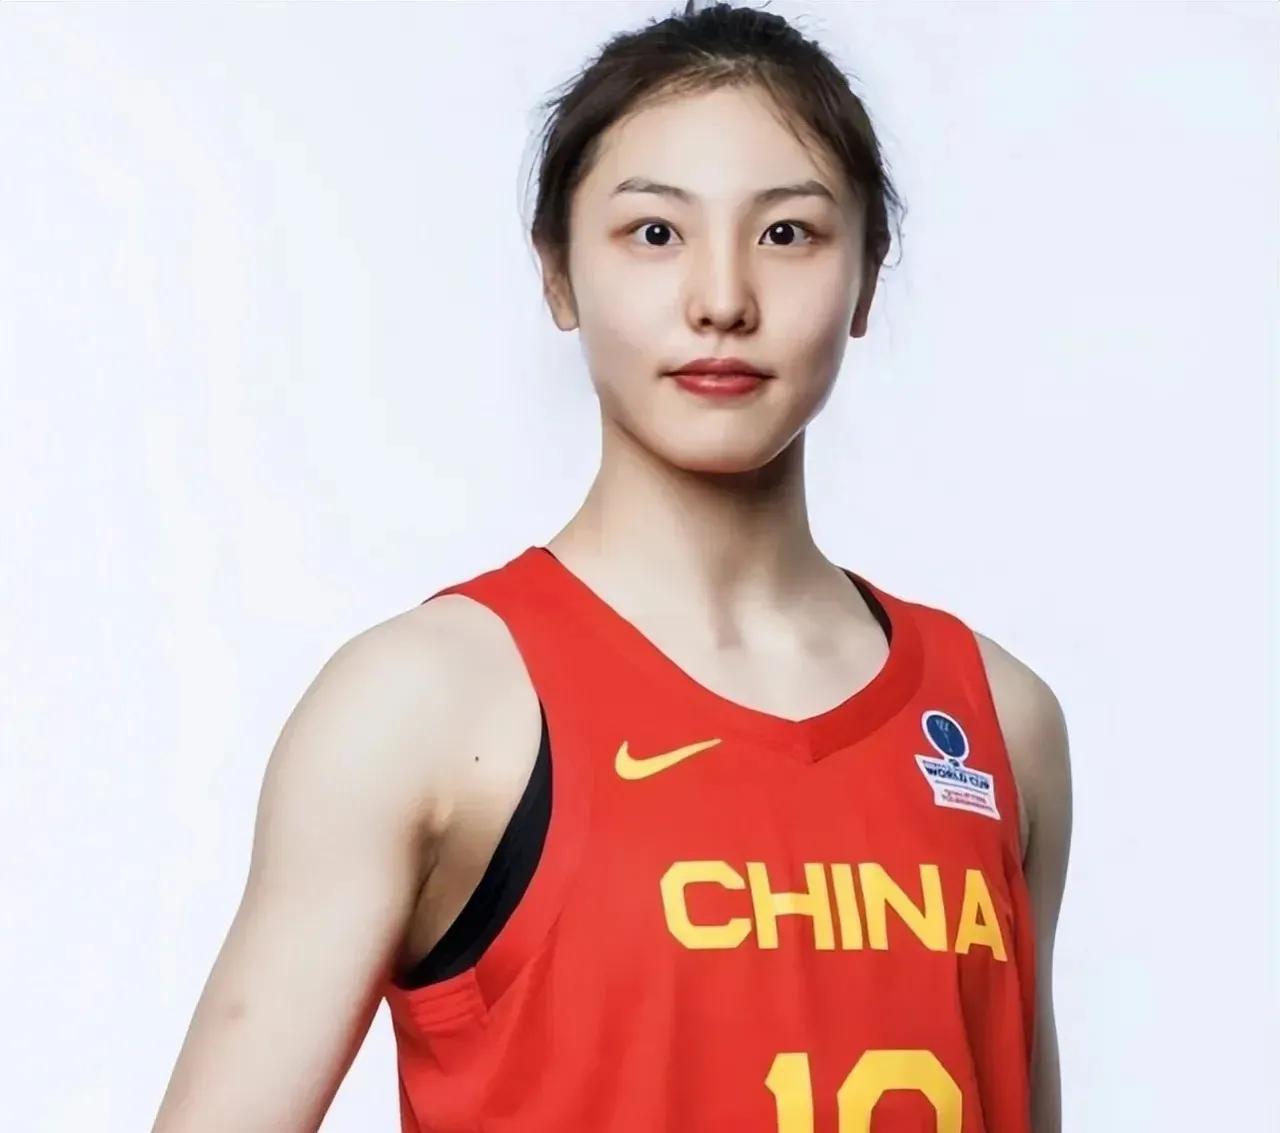 中国女篮现役的四朵金花，不仅拥有高颜值，更展现出了令人瞩目的实力和魅力:

1、(2)